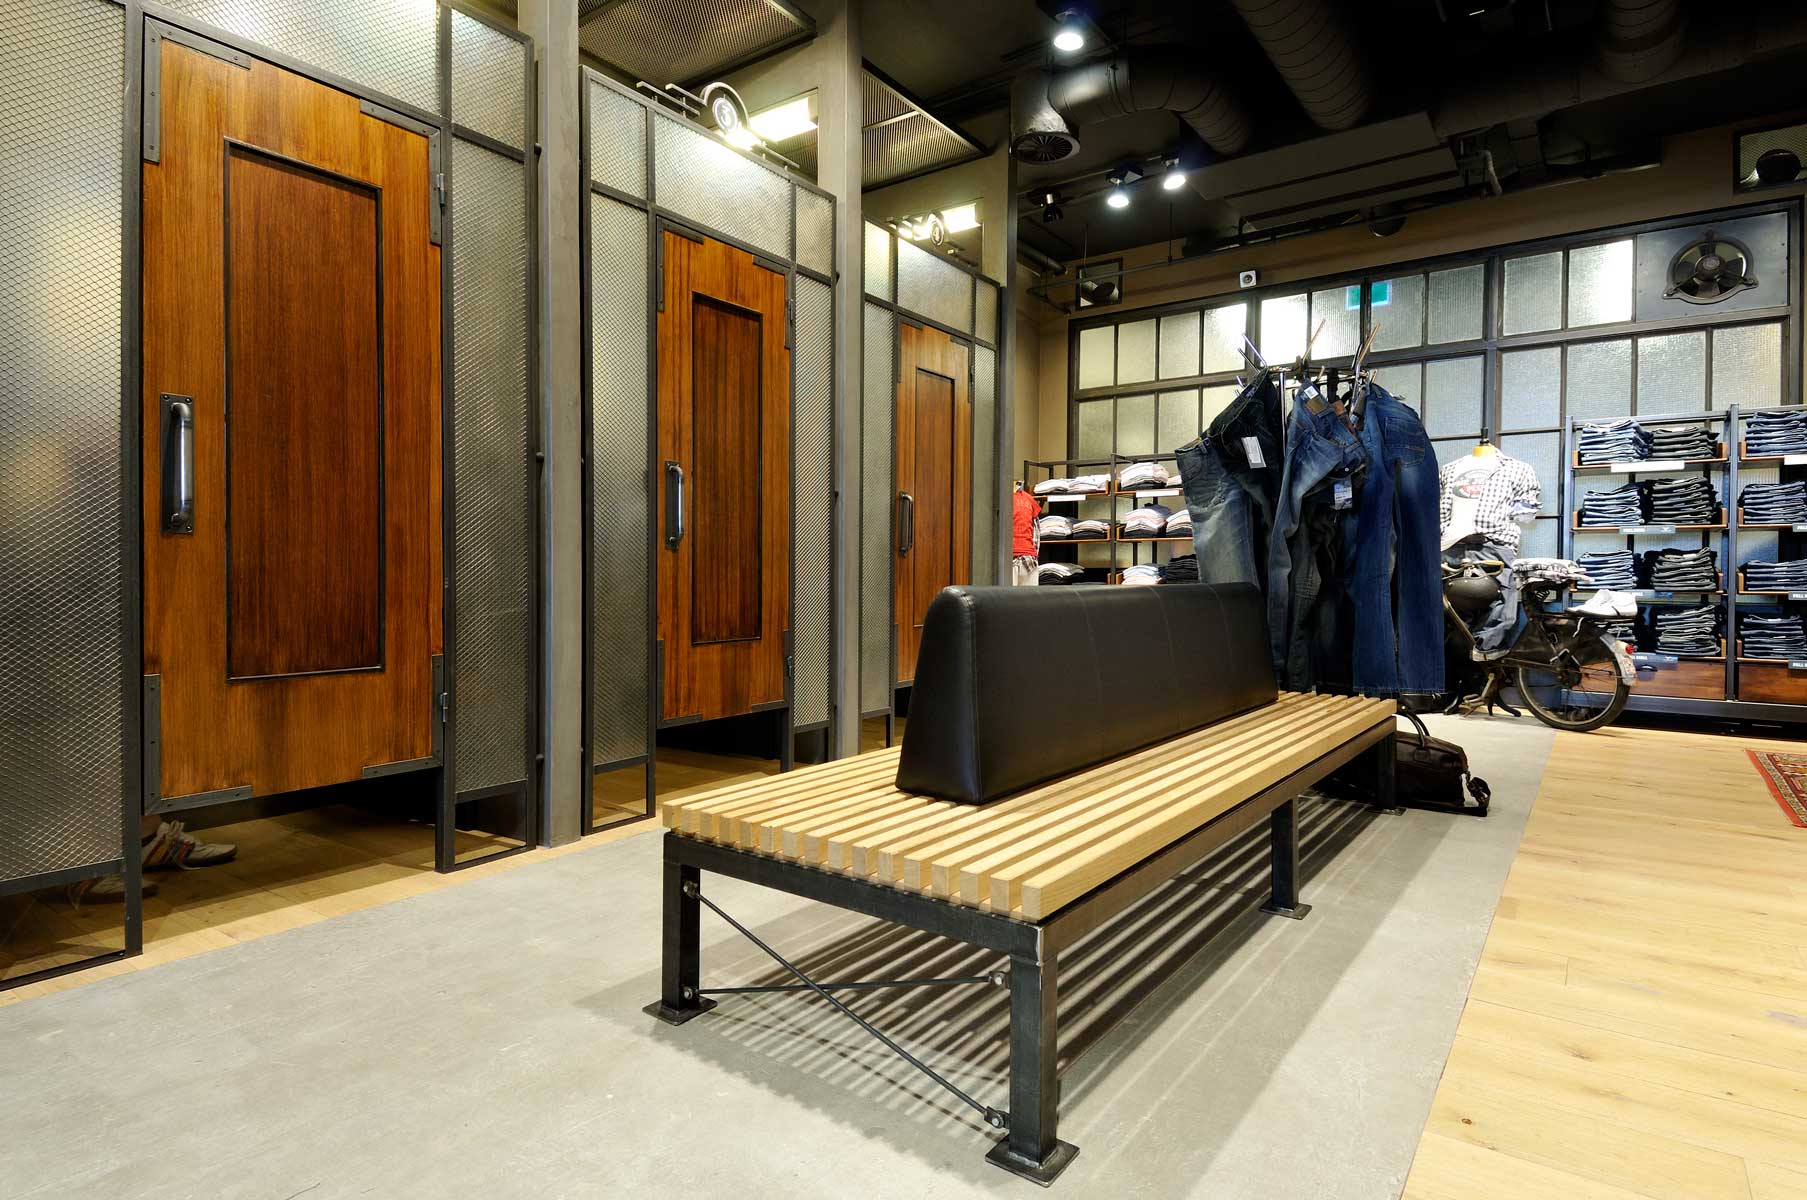 Interieur Legend winkel Den Bosch